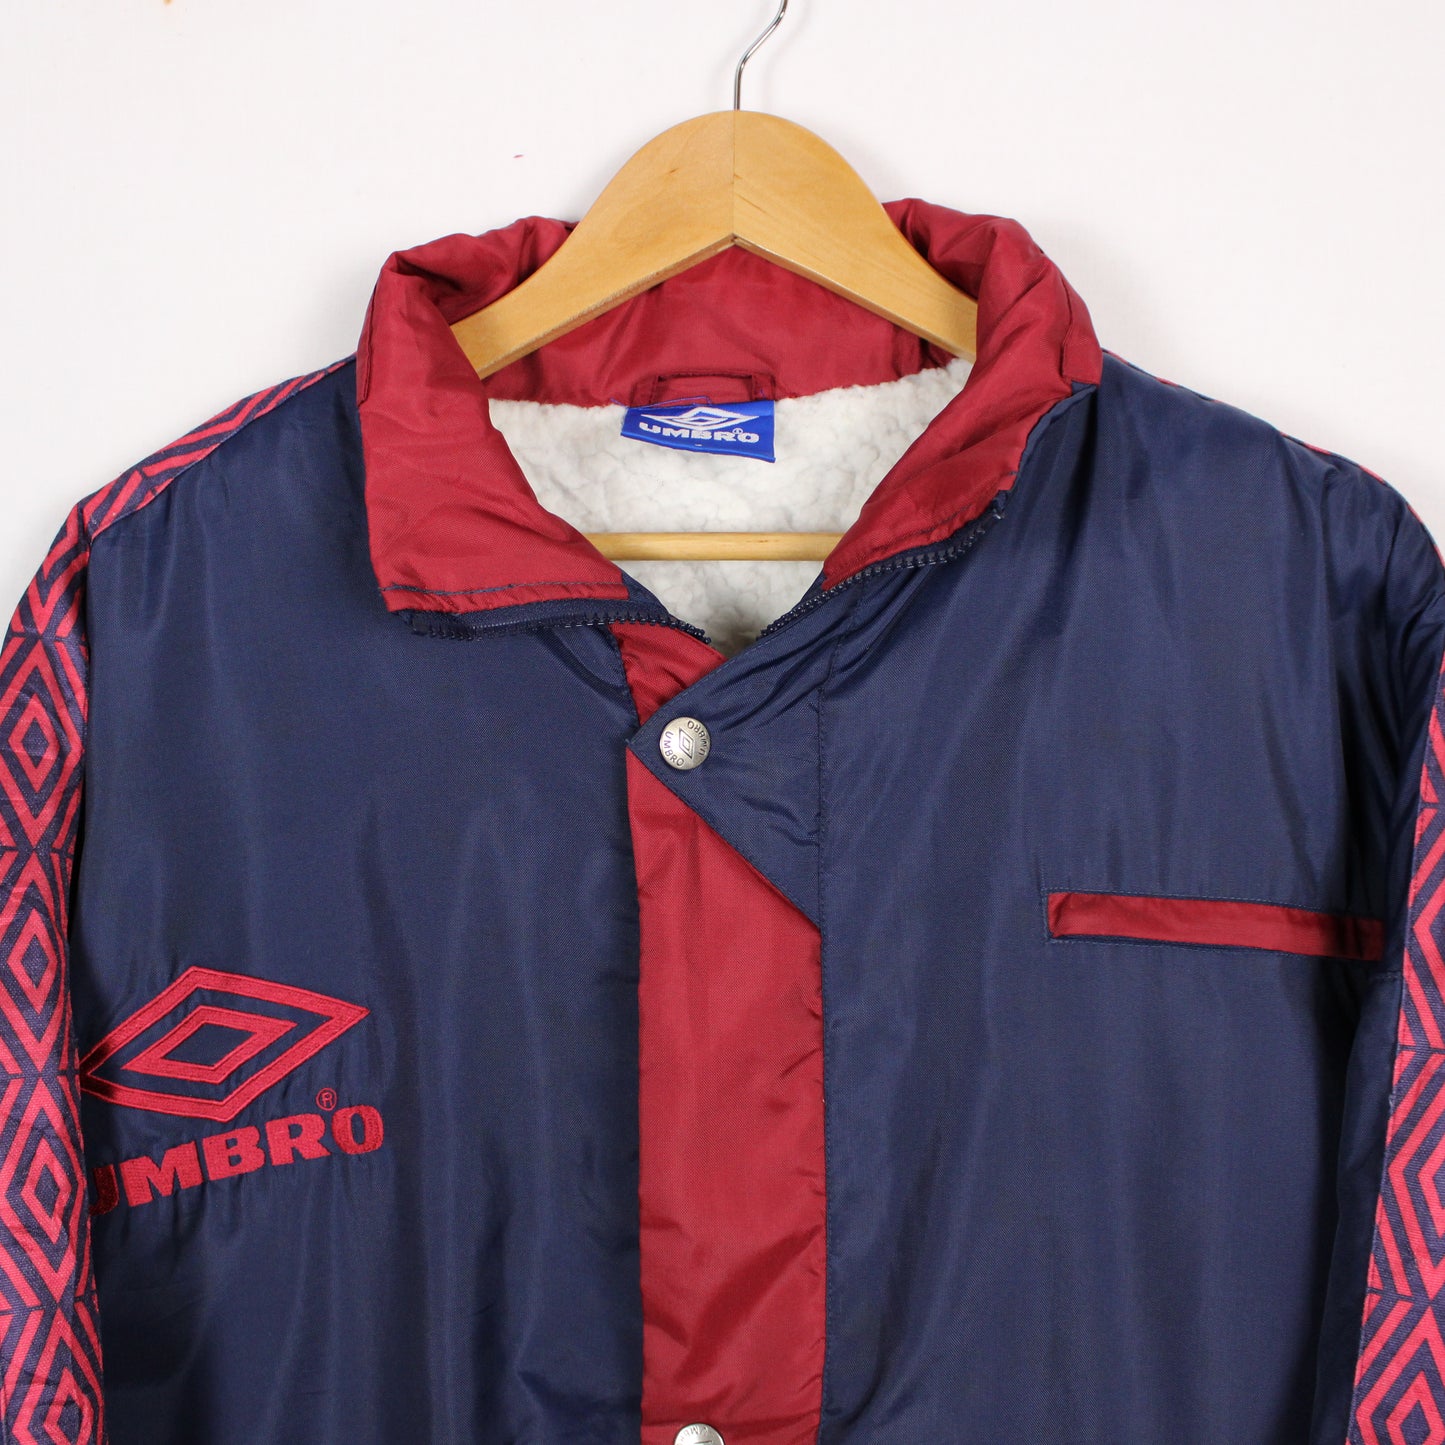 Vintage Umbro Sherpa Parka Jacket - L